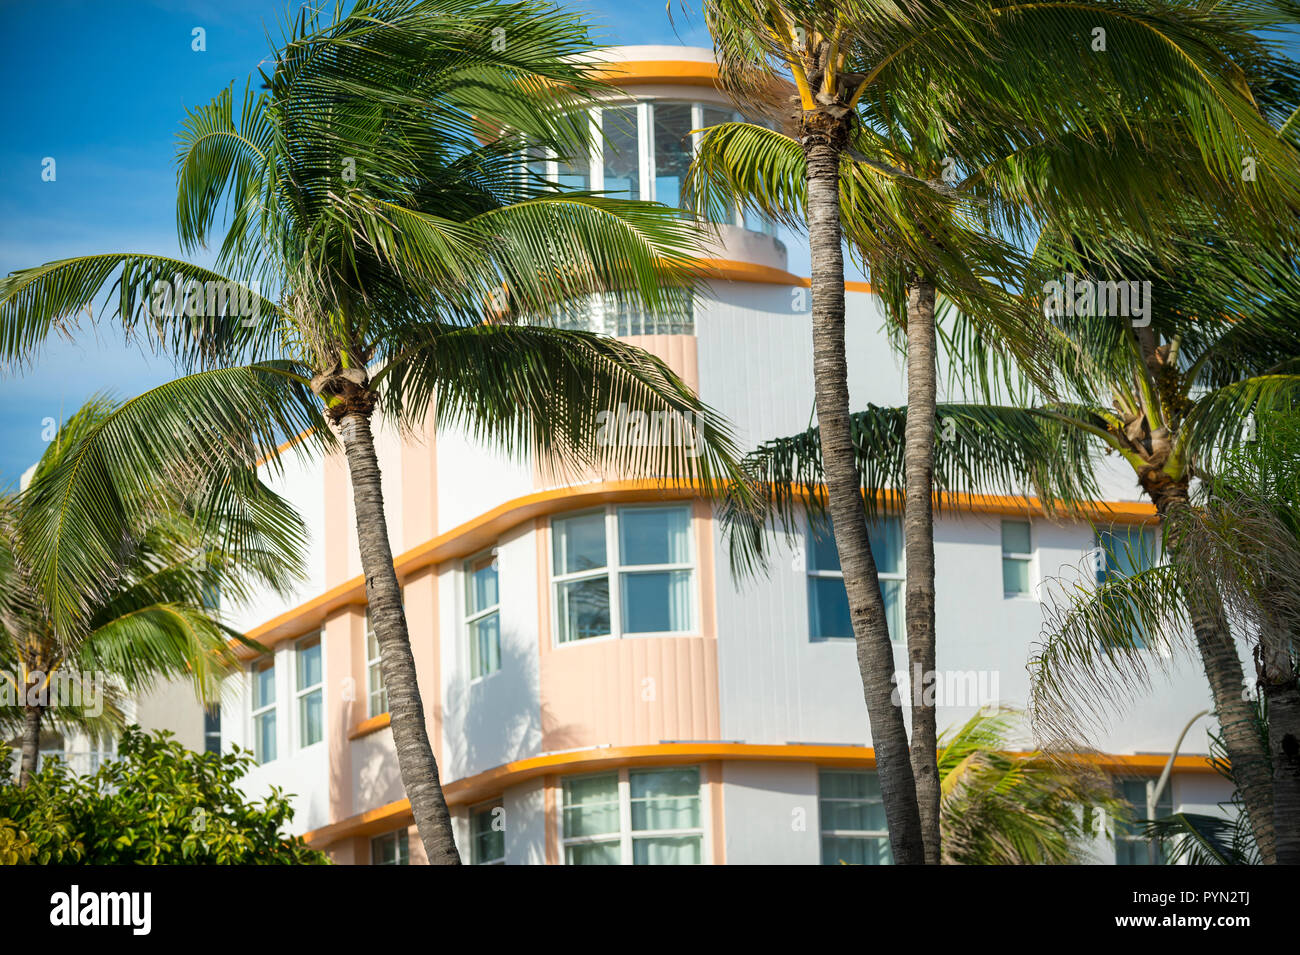 Palmen blasen vor der klassischen Art déco-Architektur in South Beach, Miami, Florida, USA Stockfoto